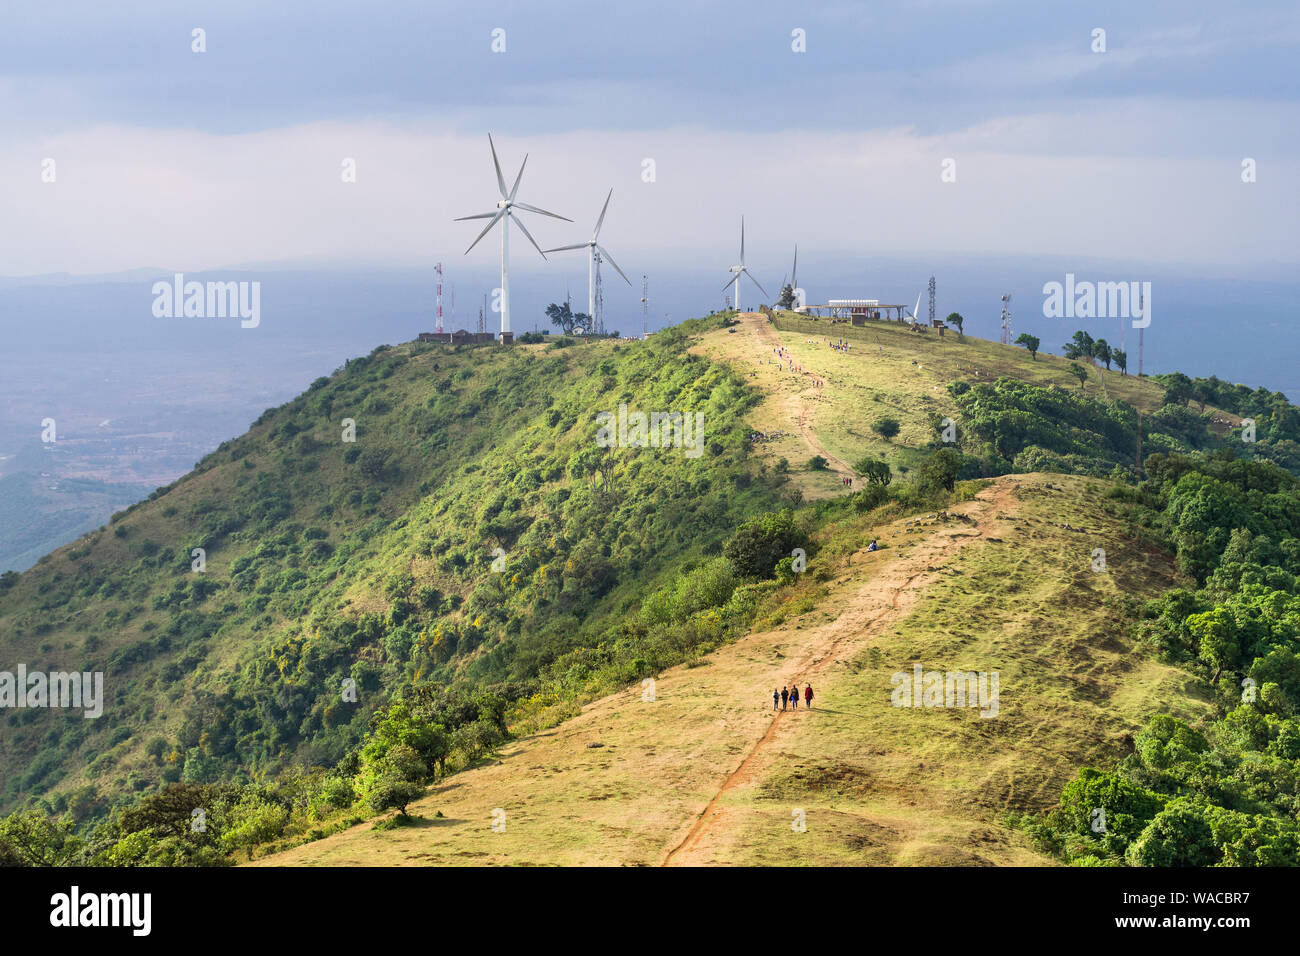 Ngong Hills Riserva Naturale con sentieri escursionistici e impianto eolico turbine in background, Kenya Foto Stock